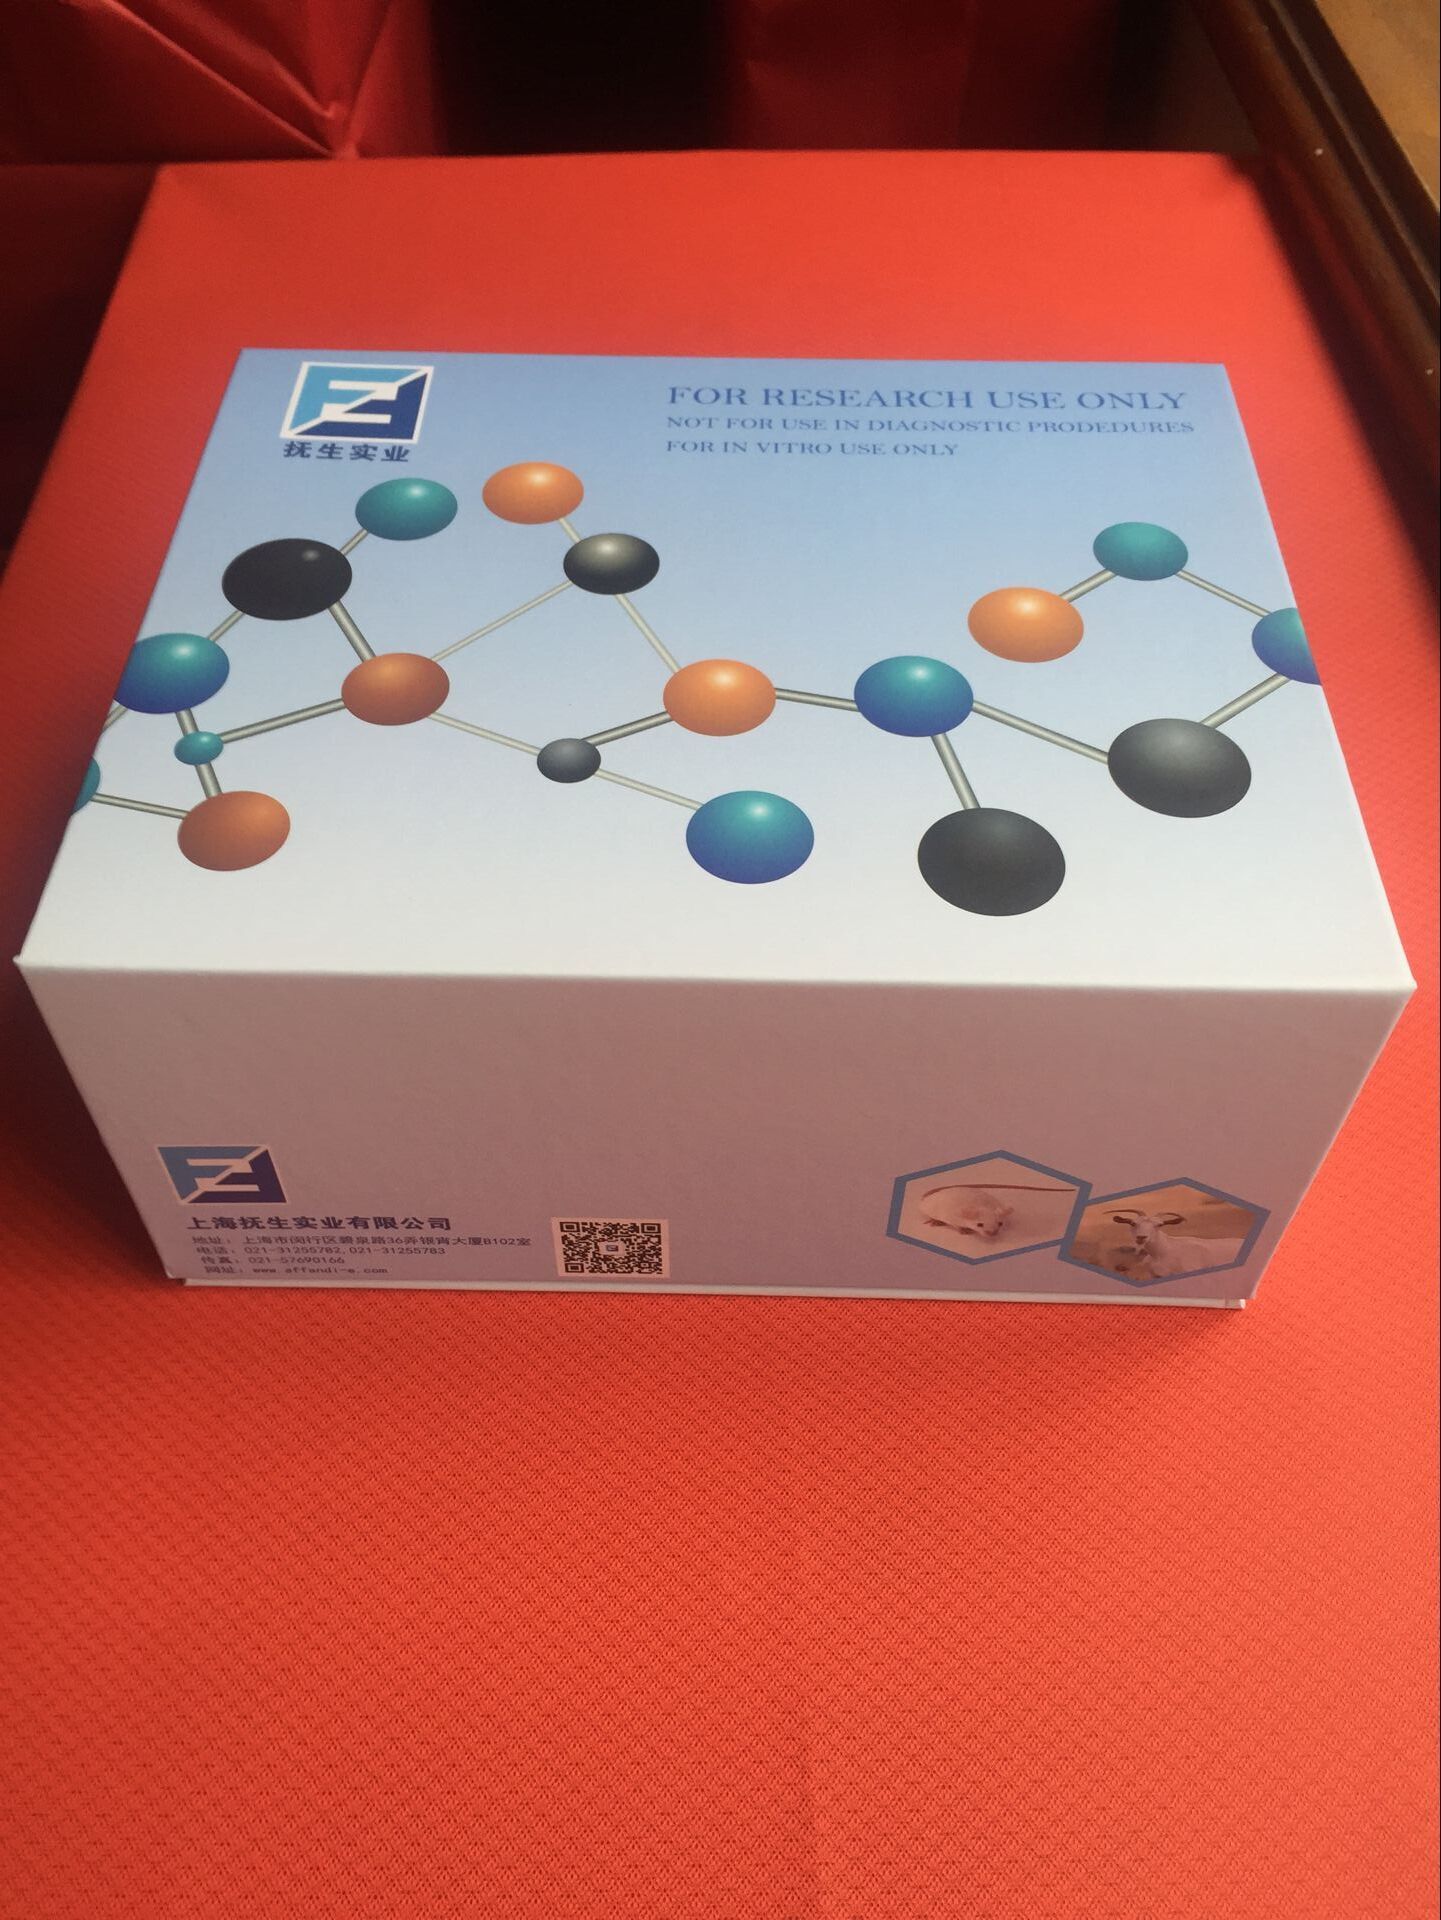 内脂素/内脏脂肪素Elisa检测试剂盒说明书